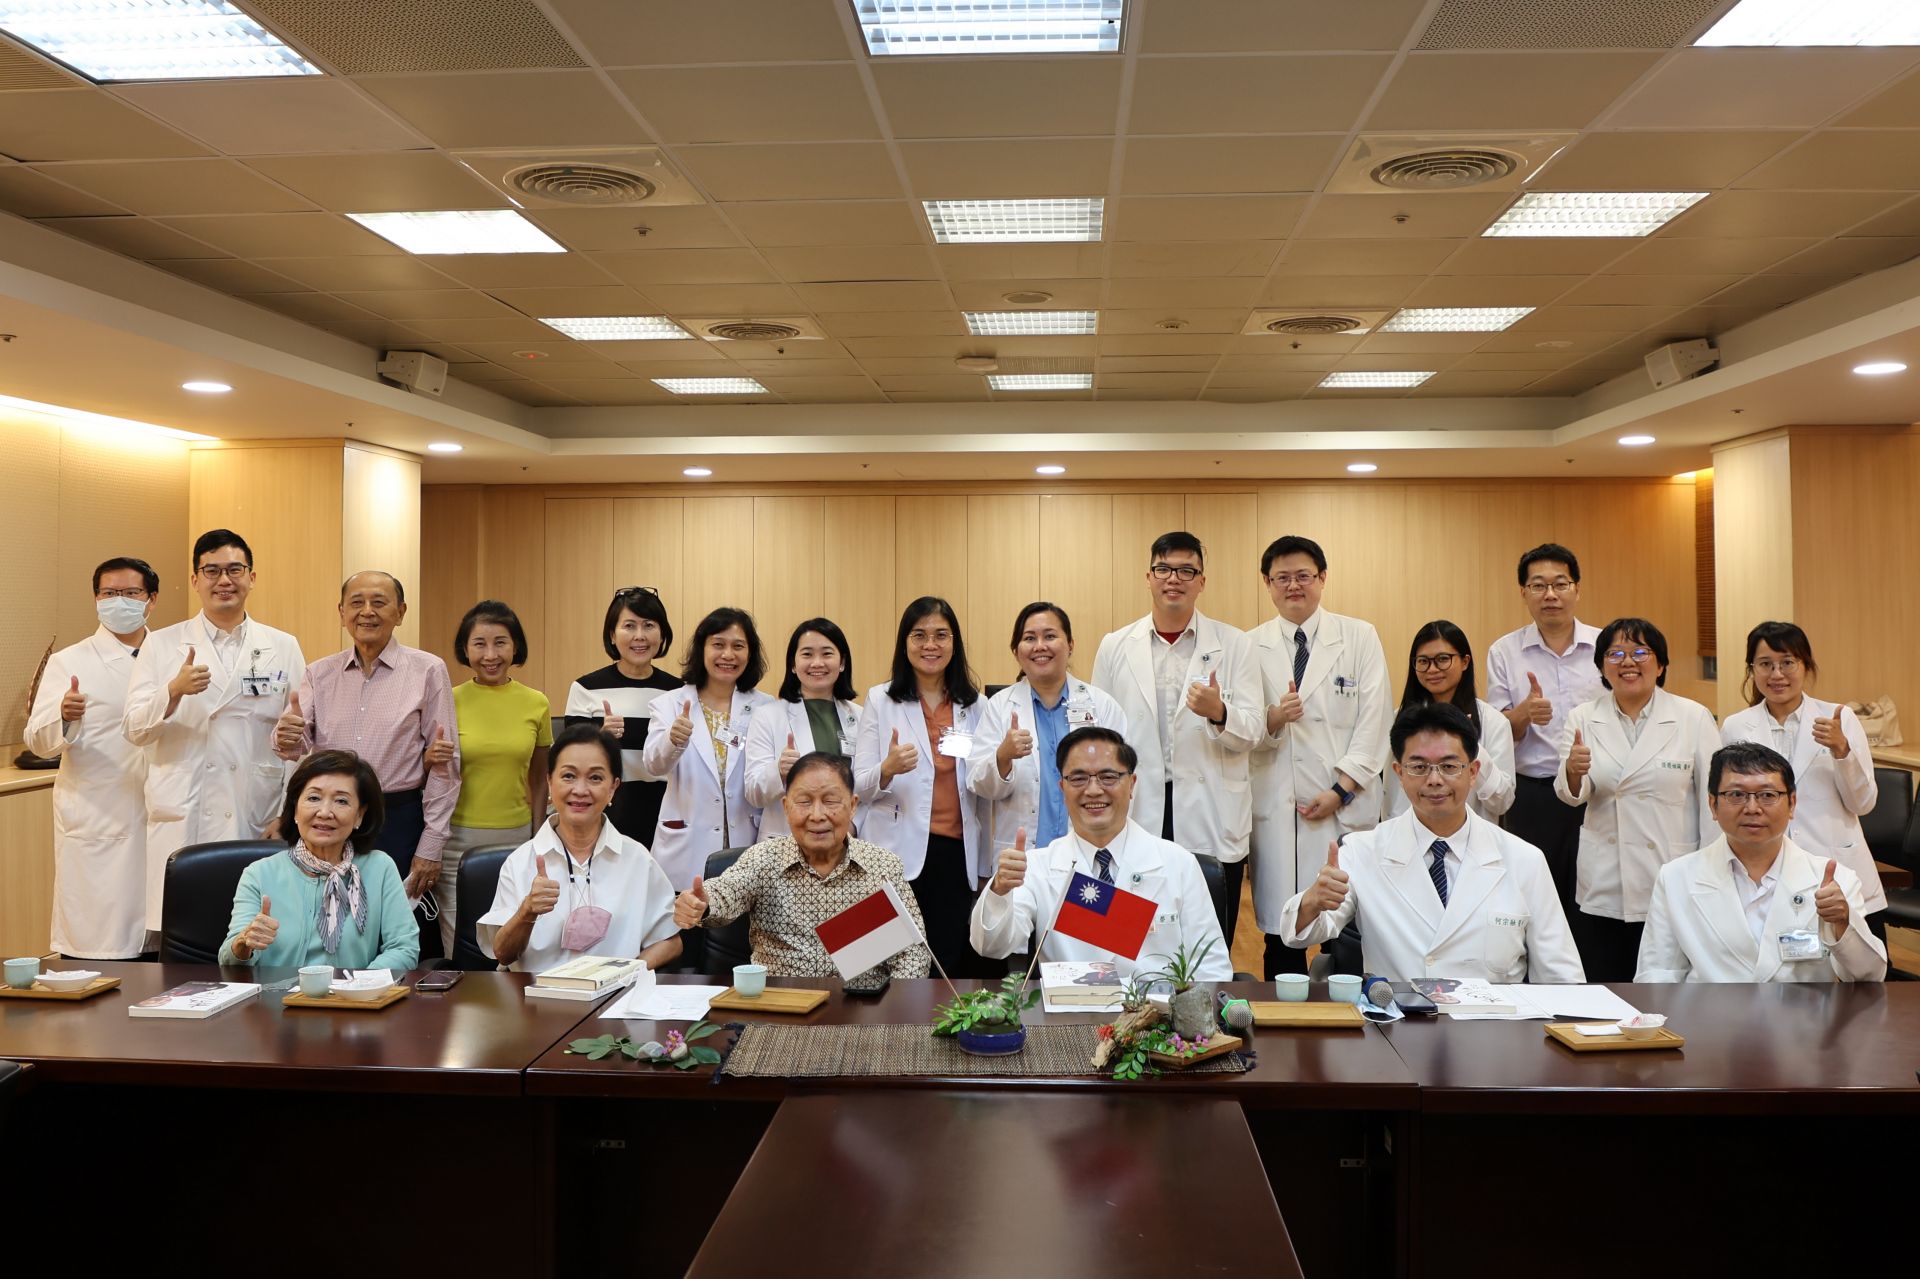 今年6月印尼Siloam Hospitals醫師到花蓮慈院學習中西醫合療模式。